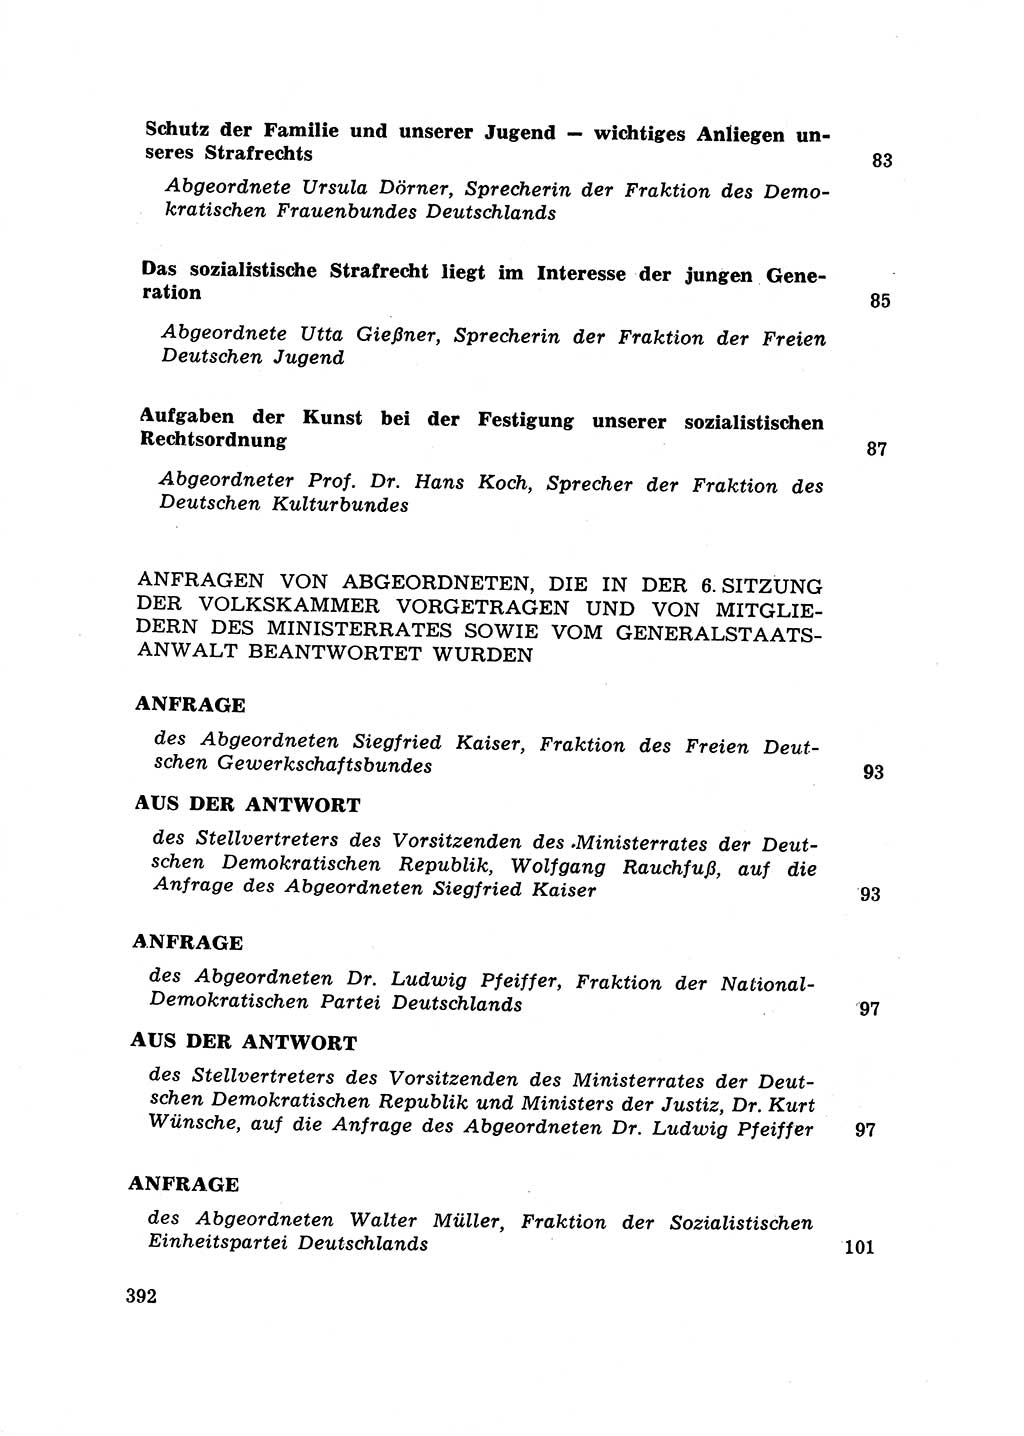 Strafrecht [Deutsche Demokratische Republik (DDR)] 1968, Seite 392 (Strafr. DDR 1968, S. 392)